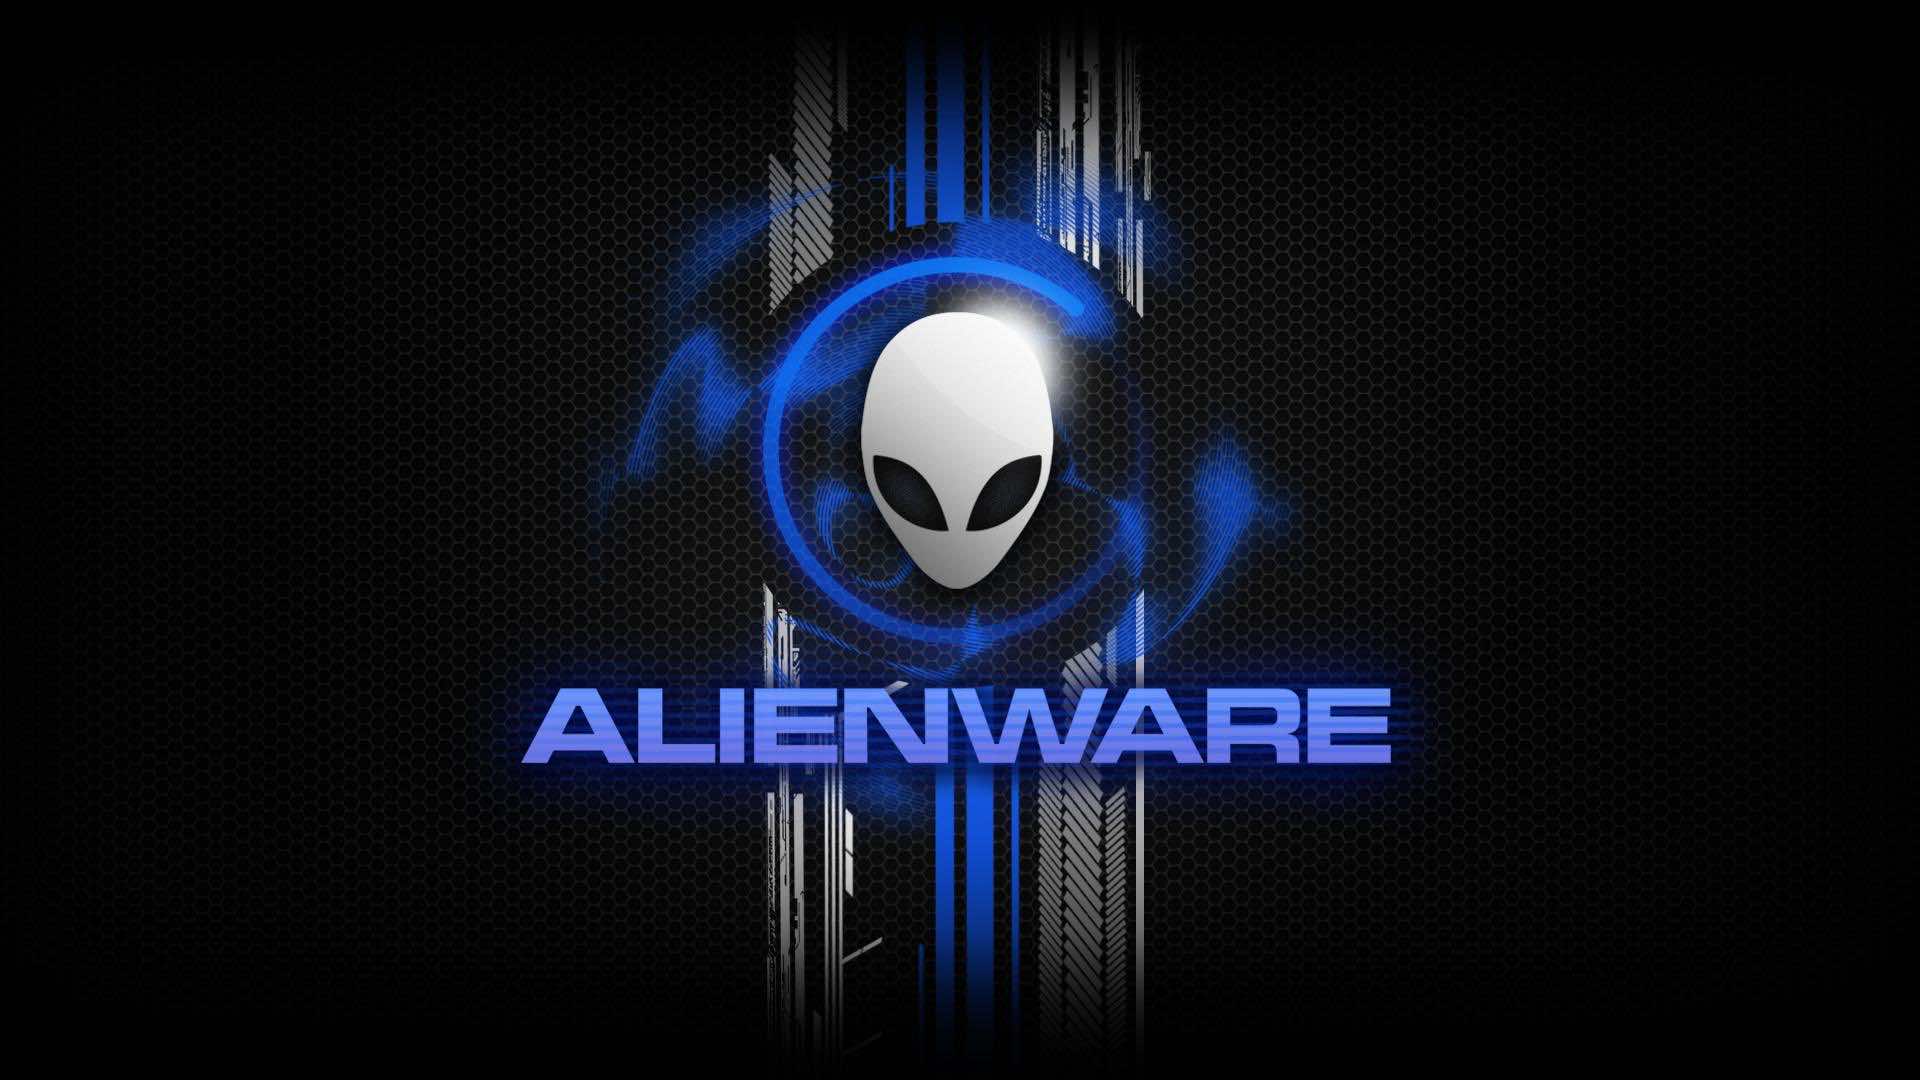 Hd Alienware Wallpapers 19x1080 Alienware Backgrounds For Laptops Desktops